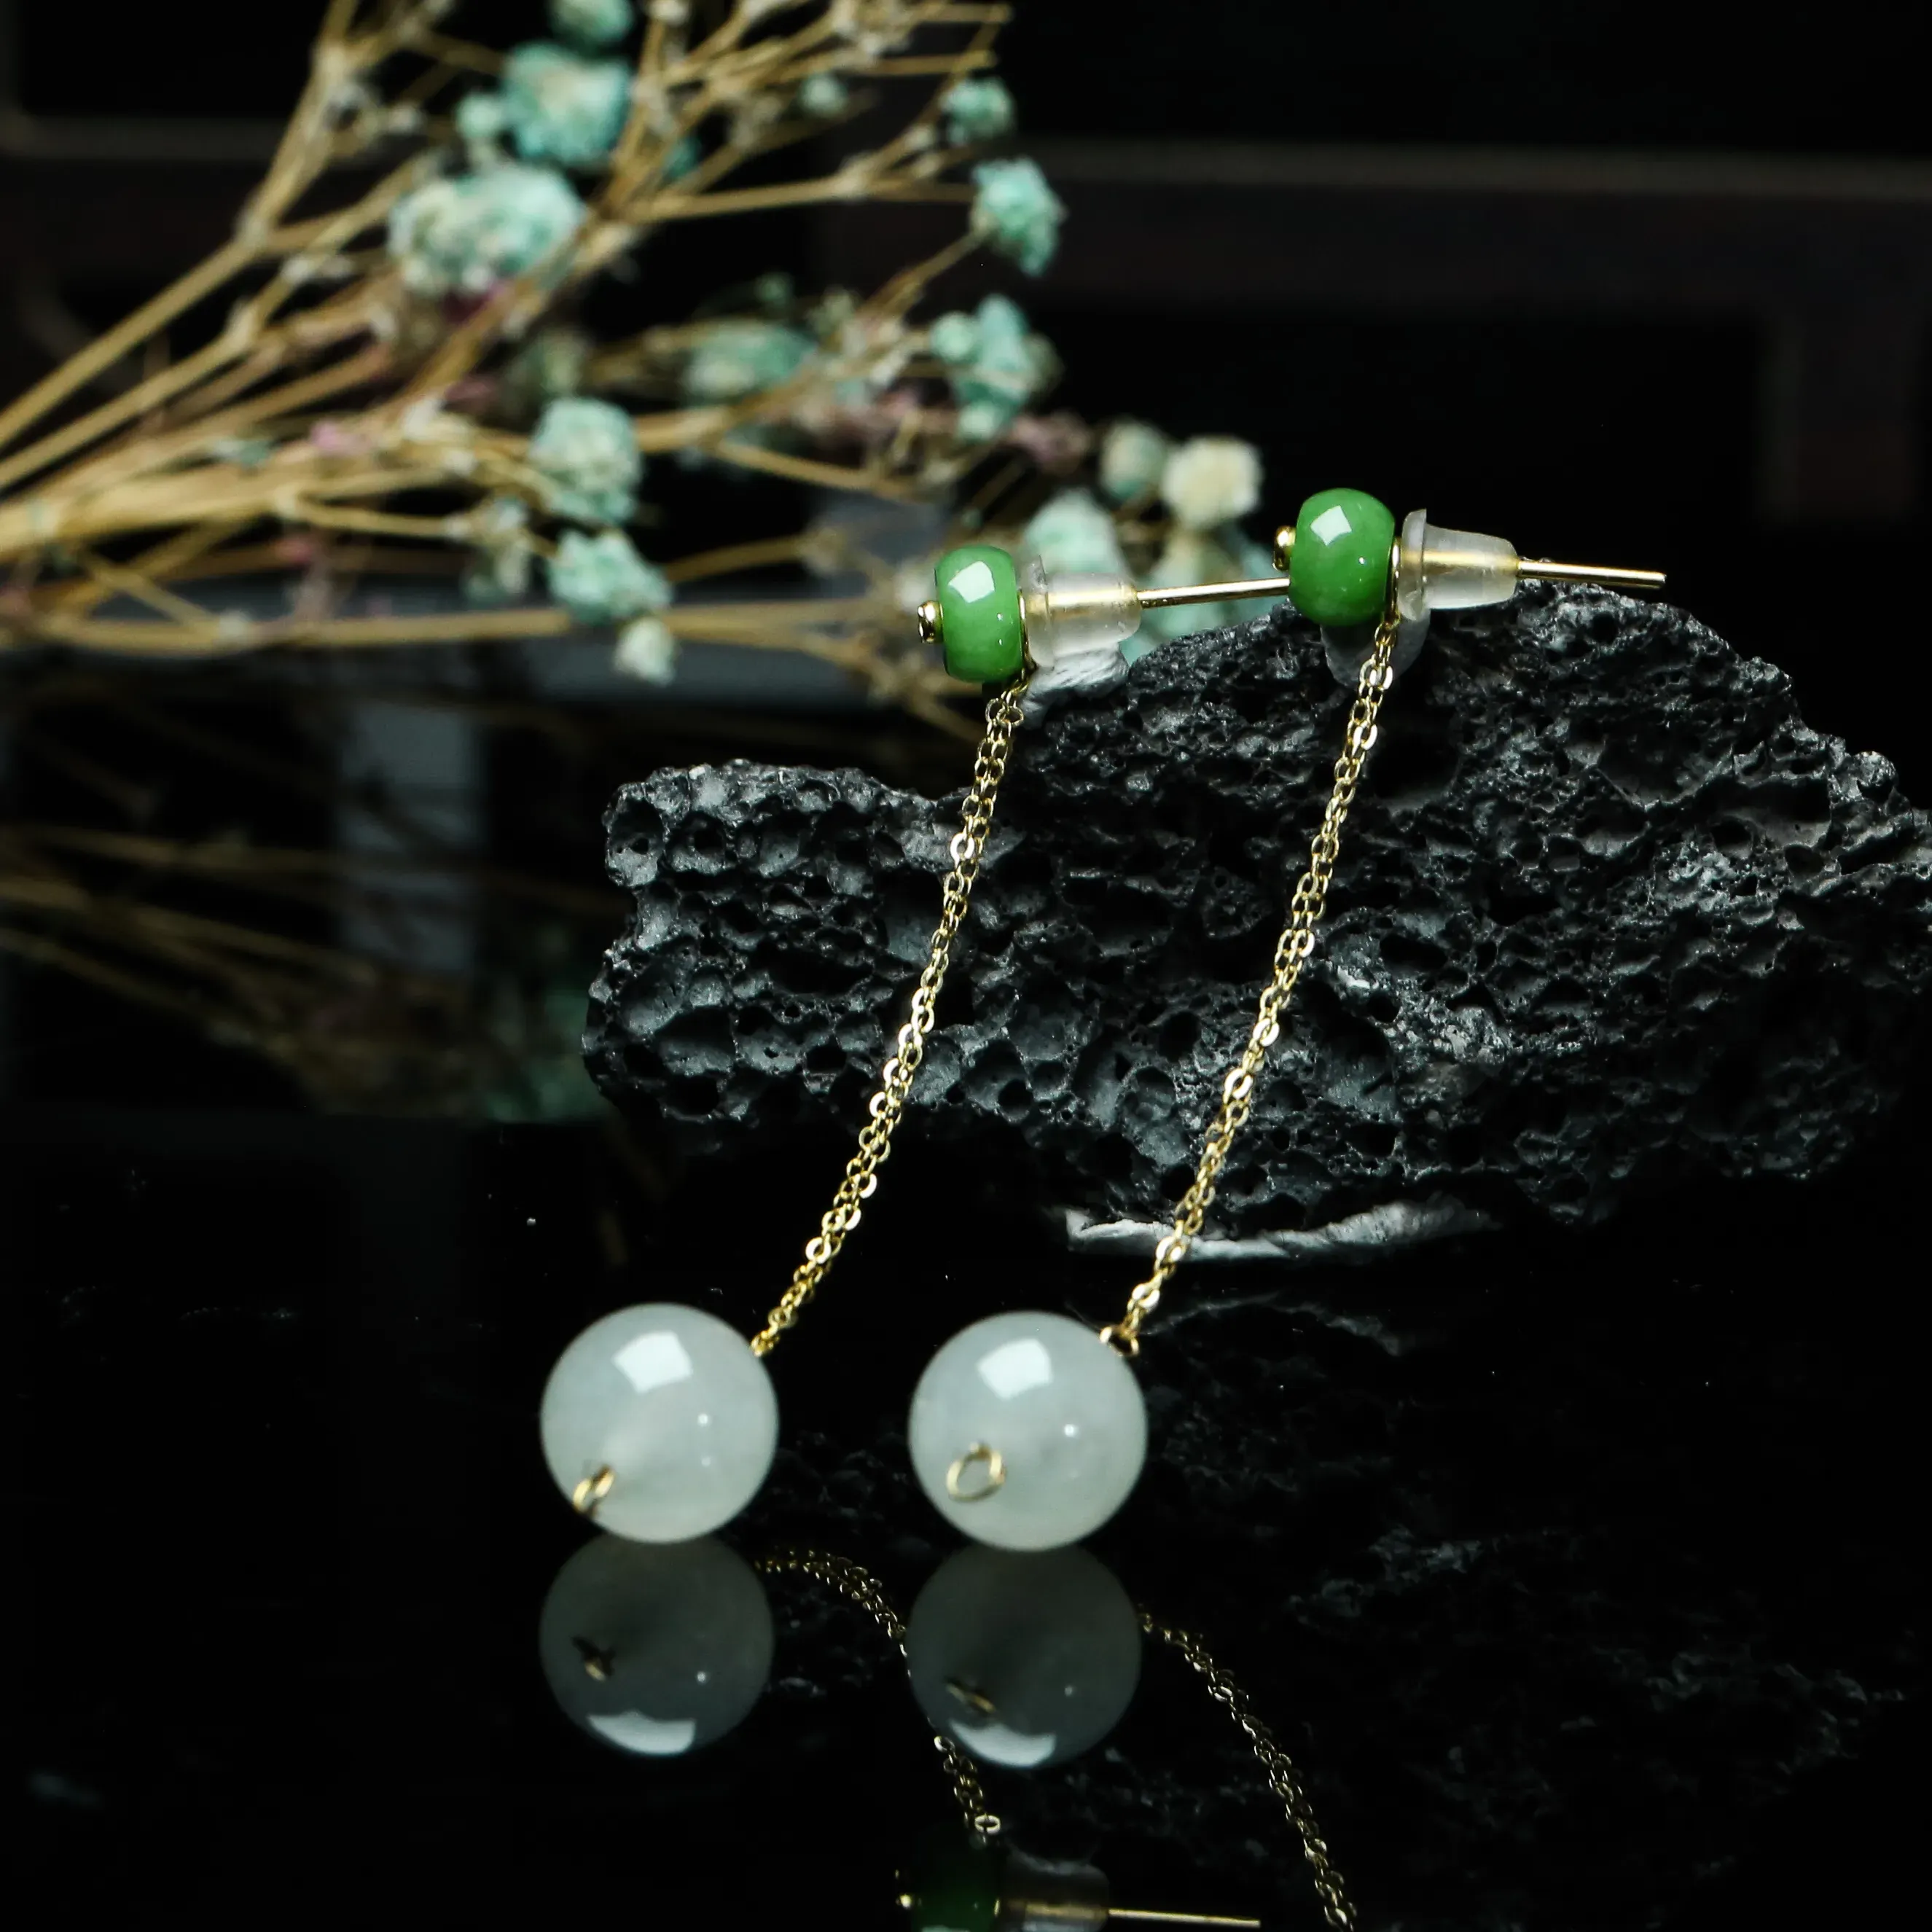 18K金镶嵌圆珠翡翠耳坠，玉质莹润，色泽清爽，佩戴效果高贵优雅，尺寸直径8.9mm。